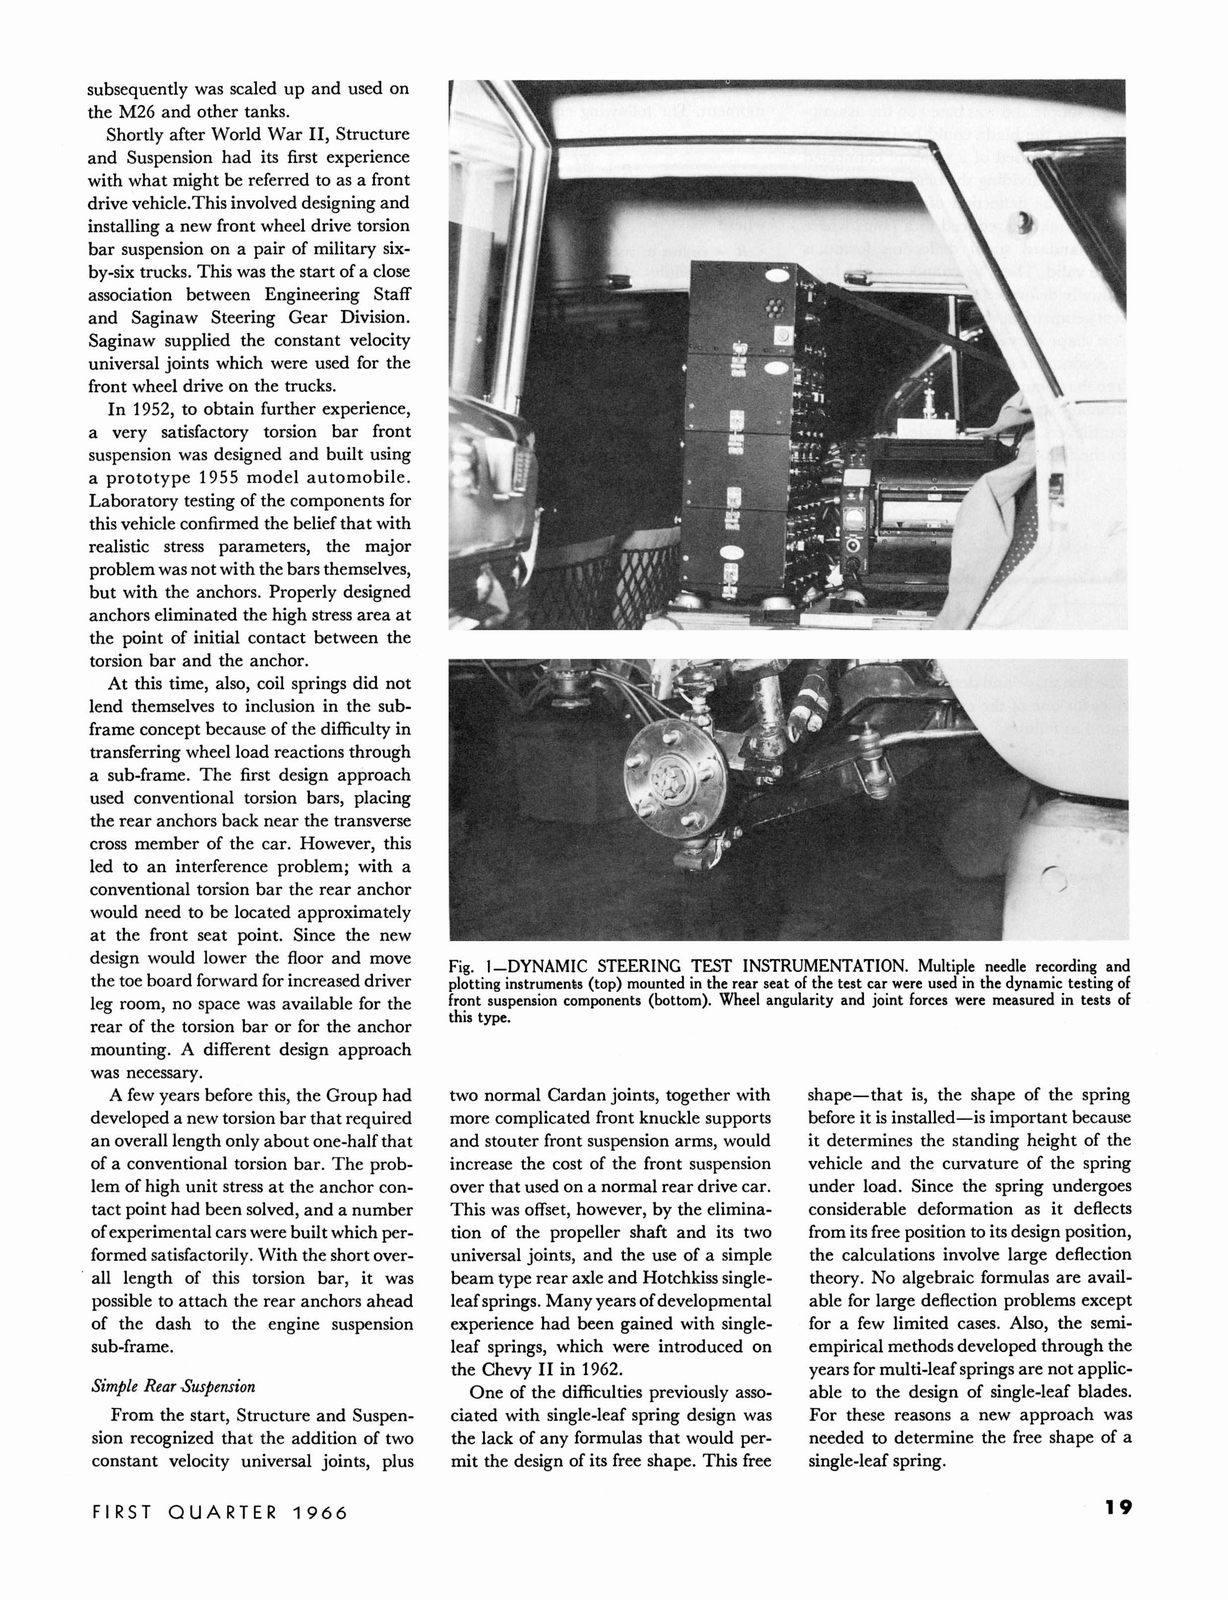 n_1966 GM Eng Journal Qtr1-19.jpg